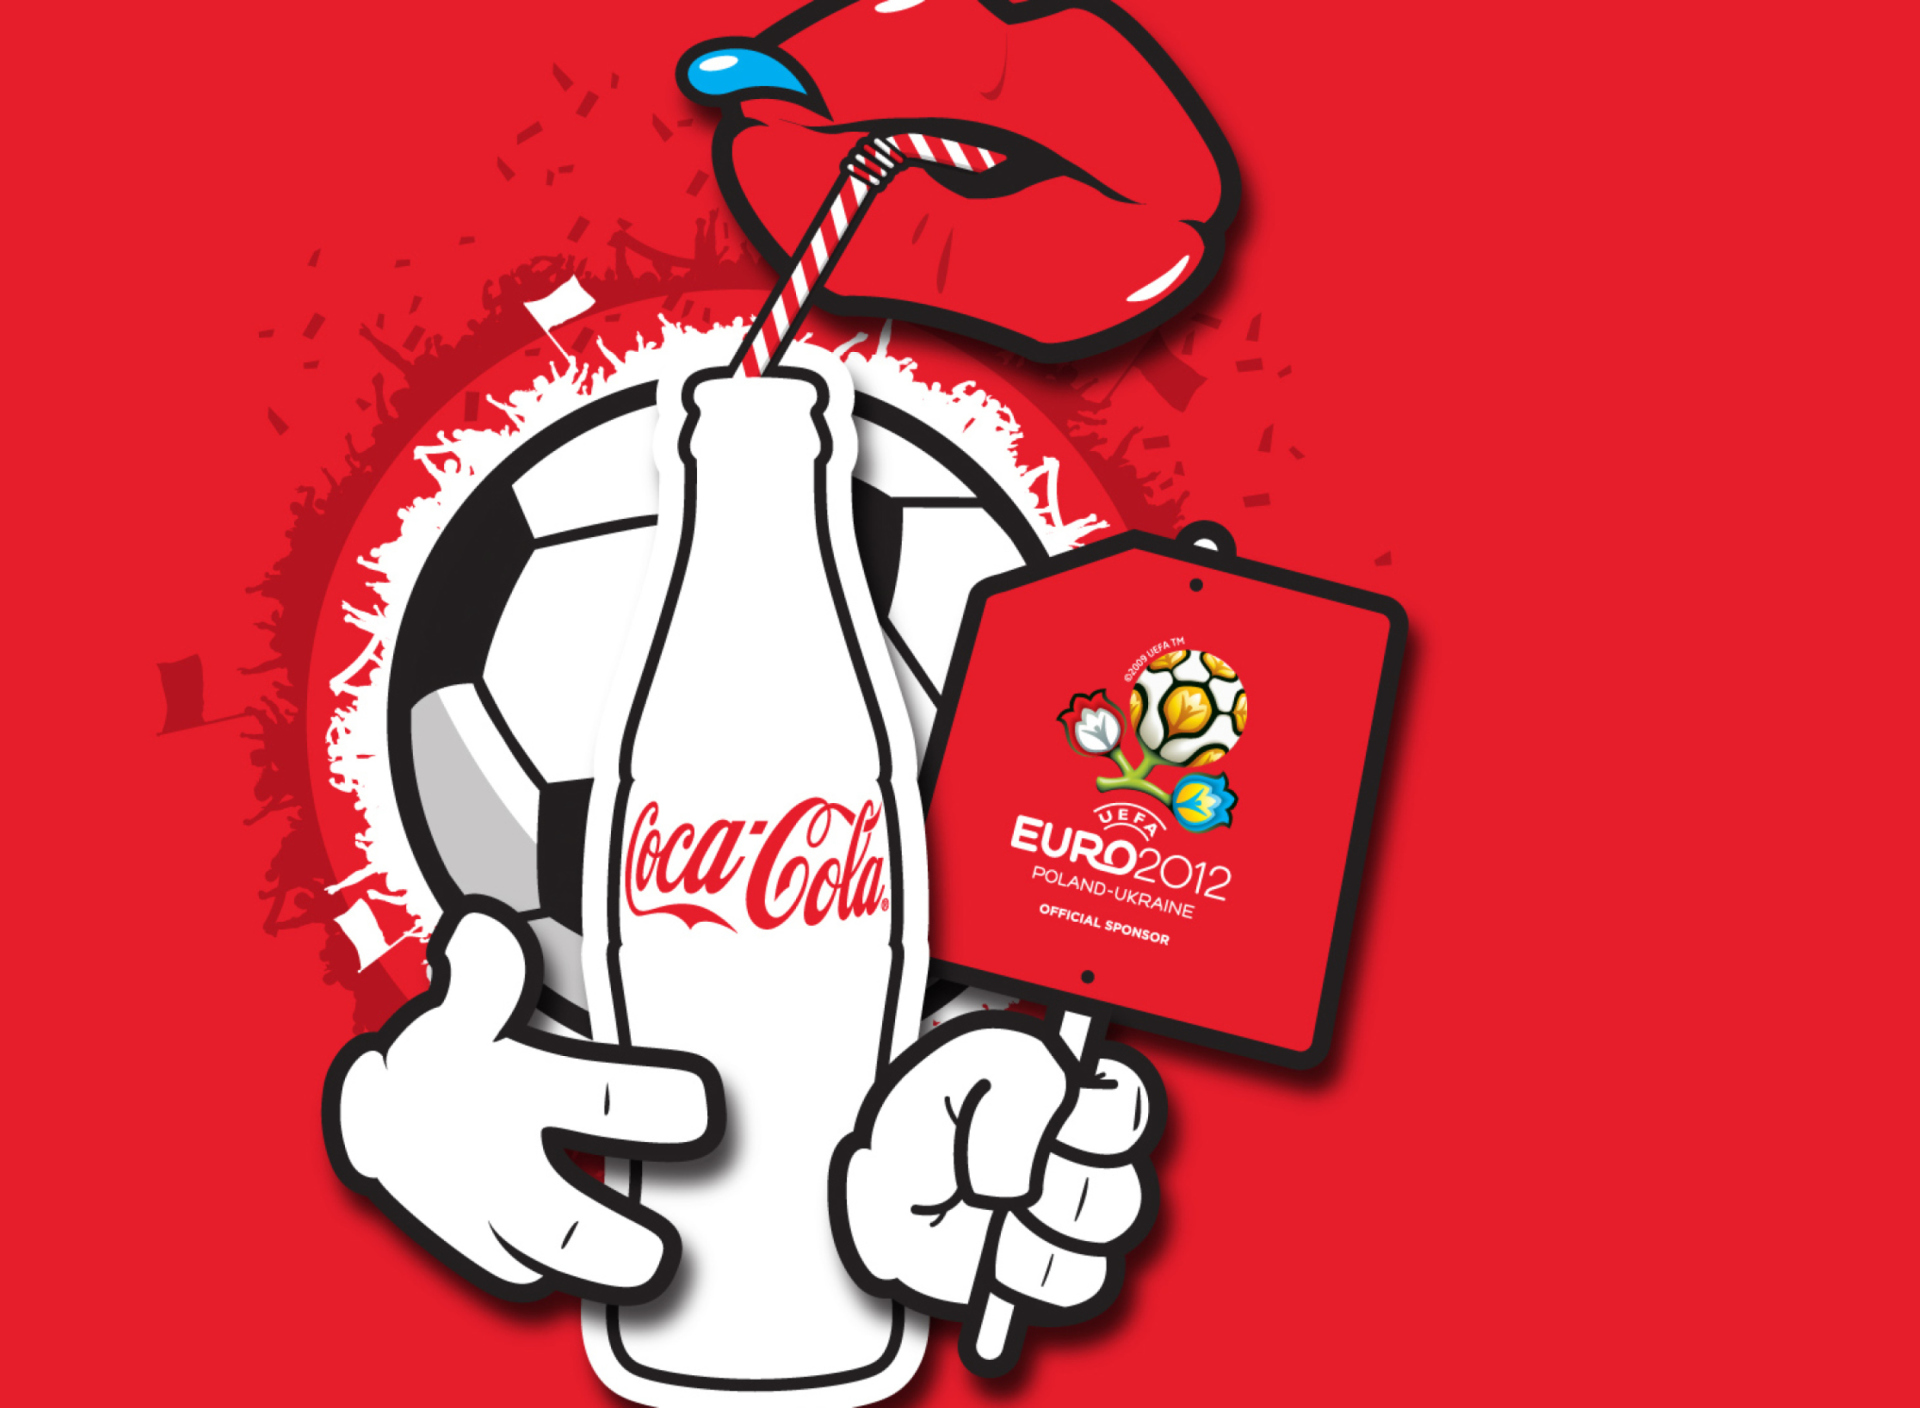 Fondo de pantalla Coca Cola & Euro 2012 full hd 1920x1408